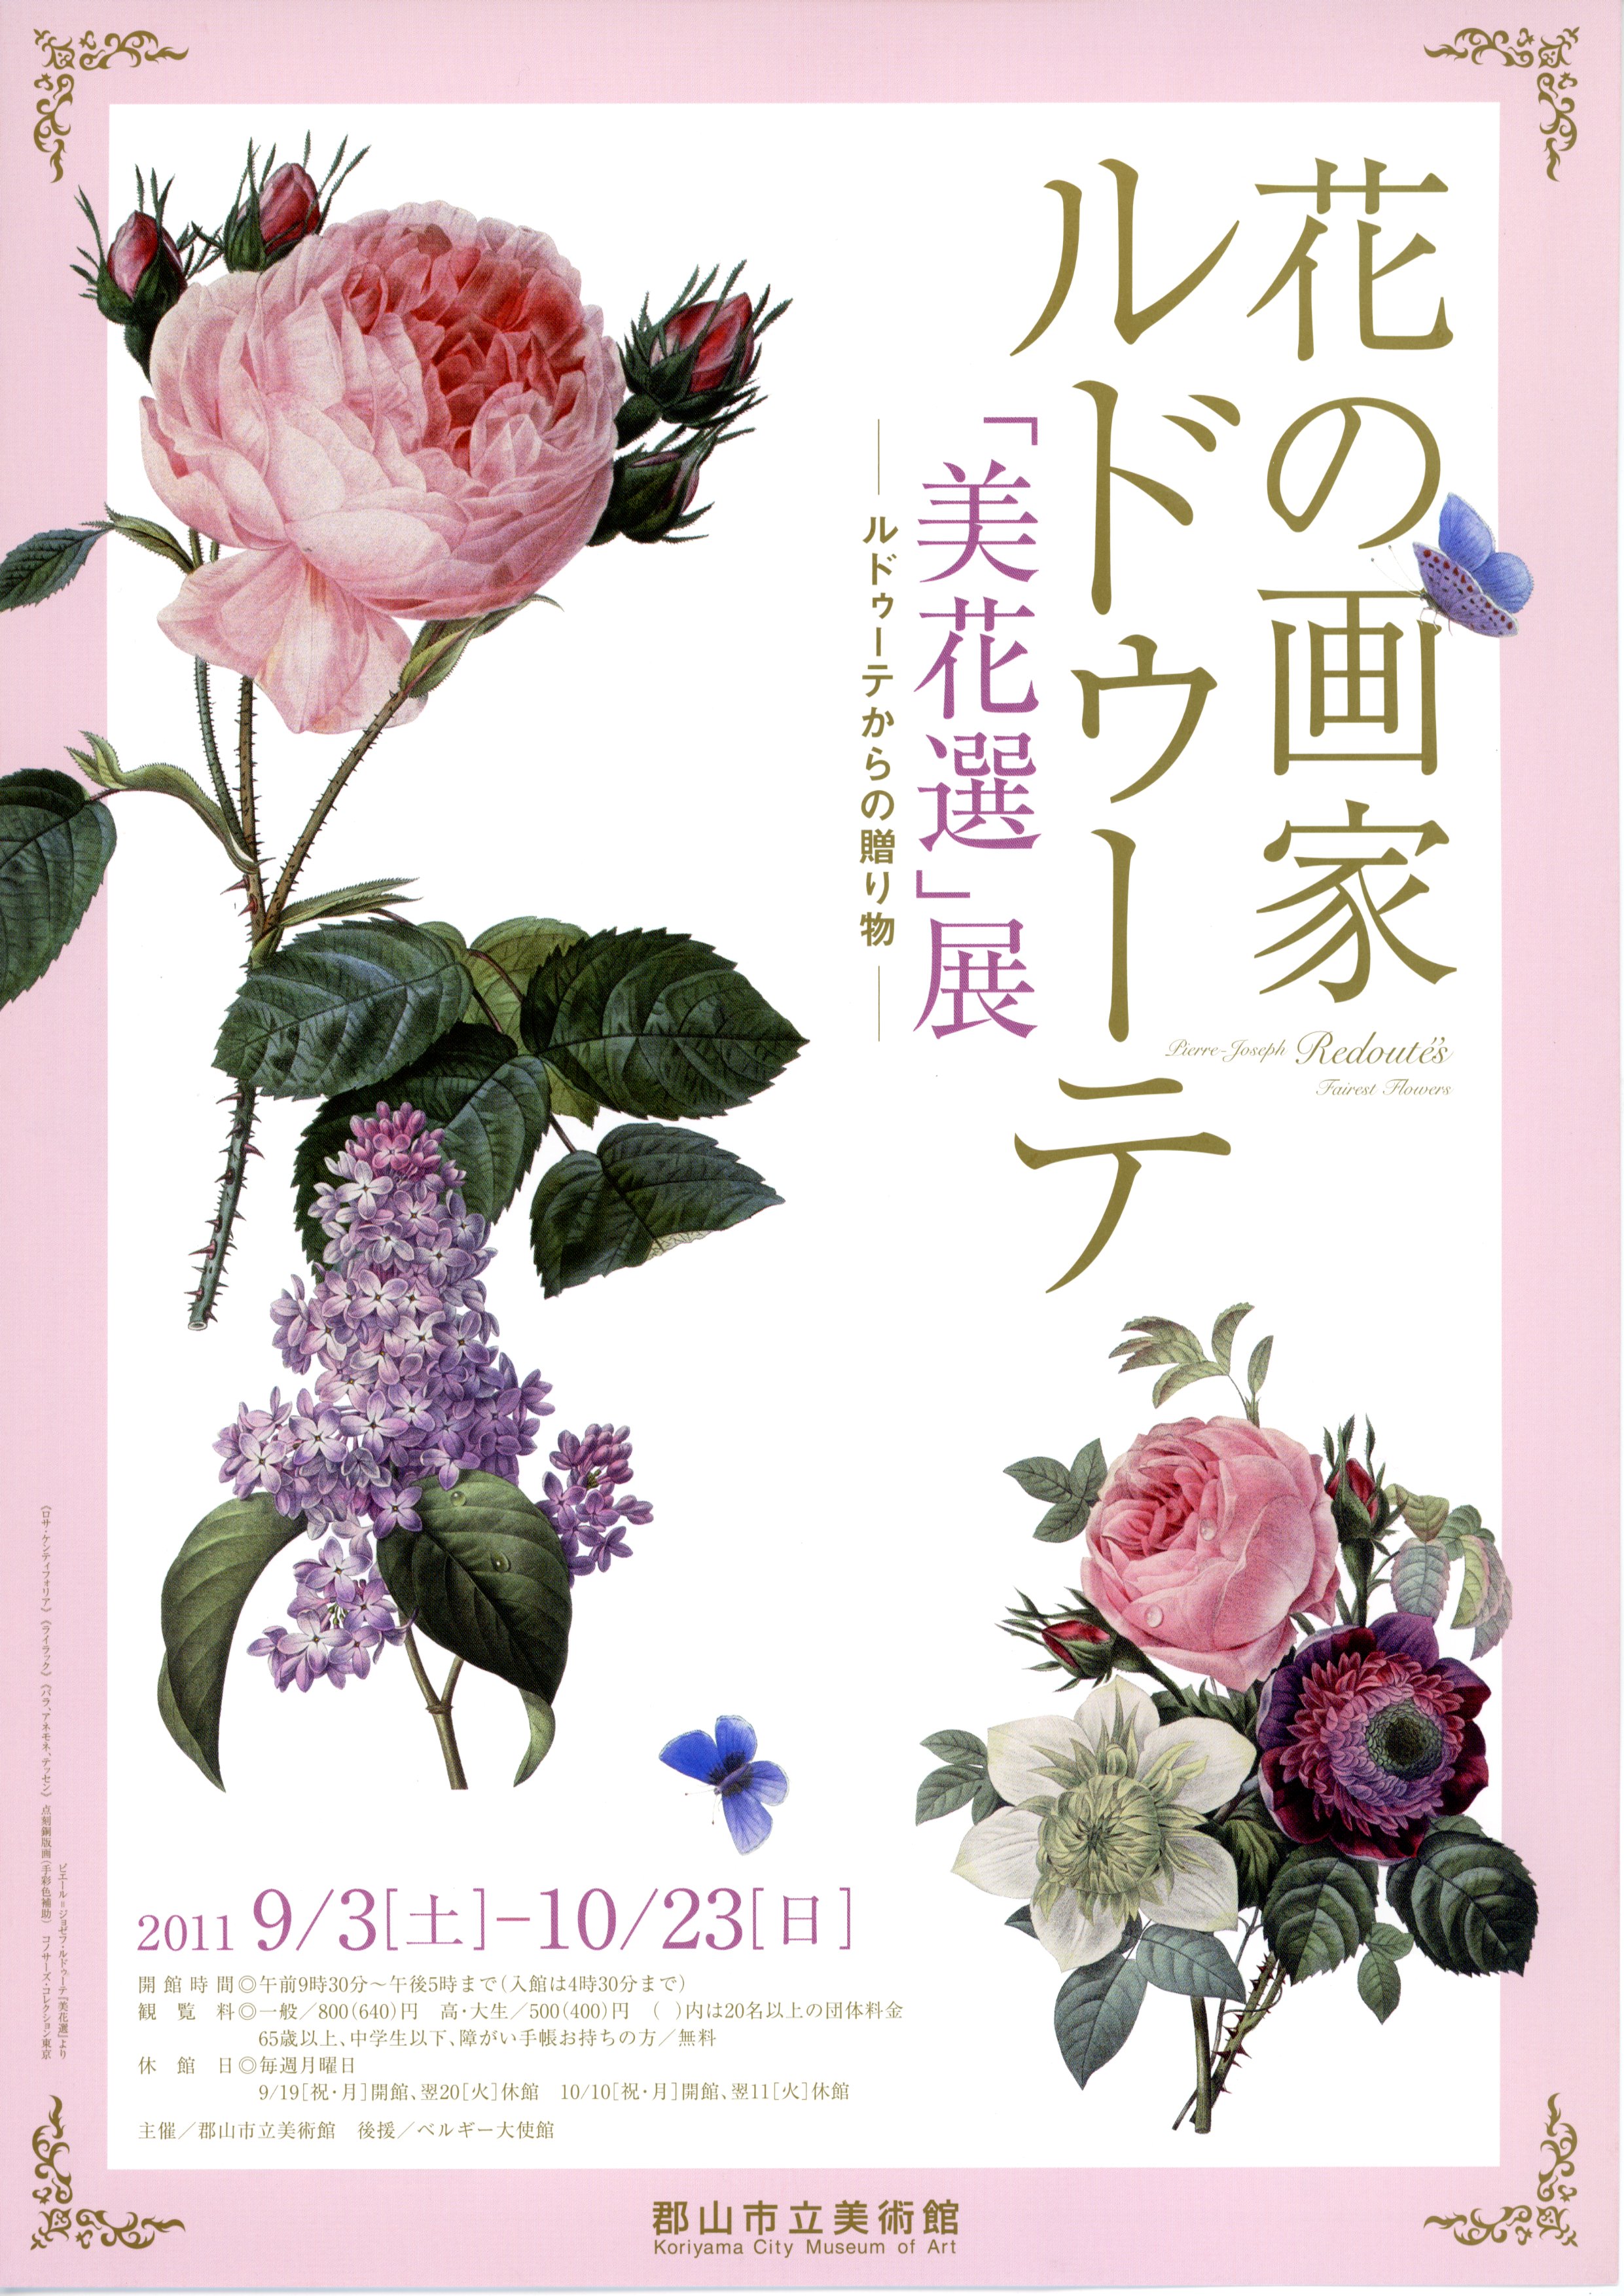 花の画家 ルドゥーテ『美花選』展のポスター